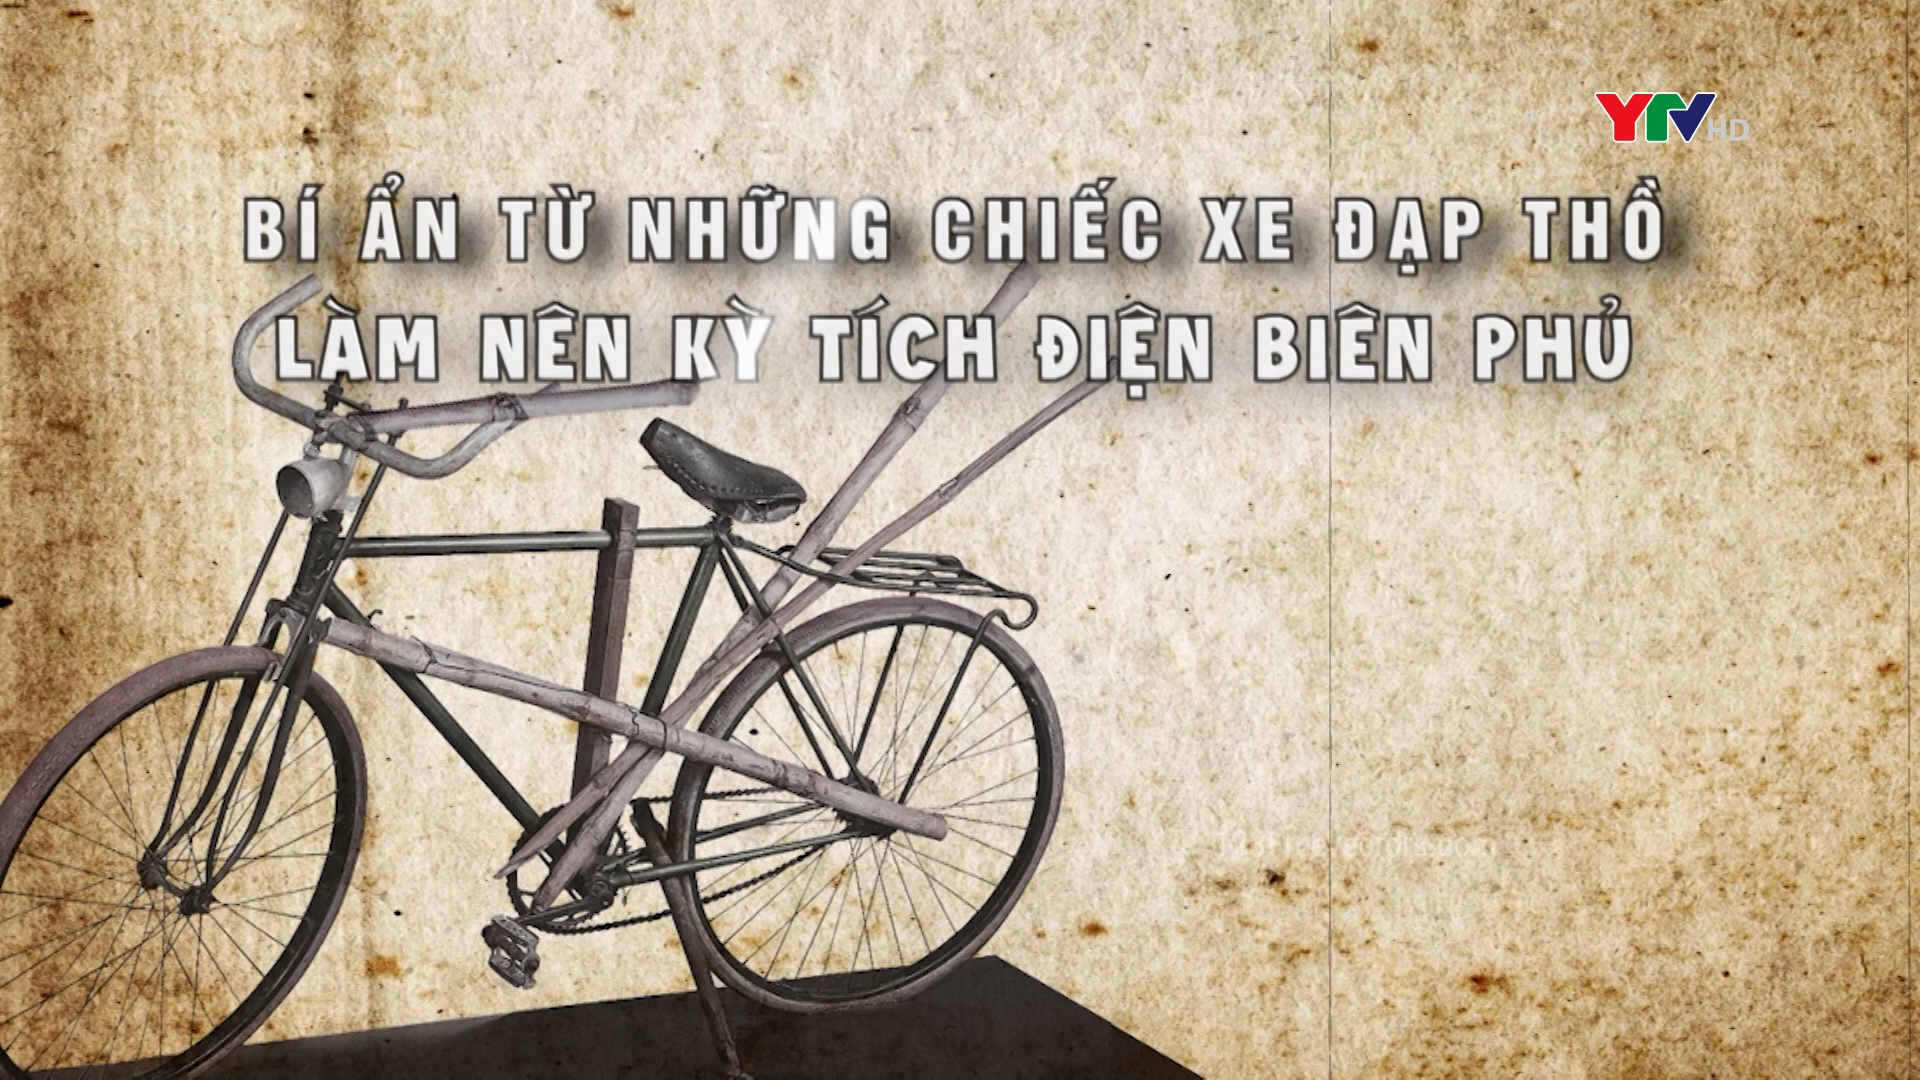 Bí ẩn những chiếc xe đạp thồ làm nên kỳ tích trong chiến dịch Điện Biên Phủ